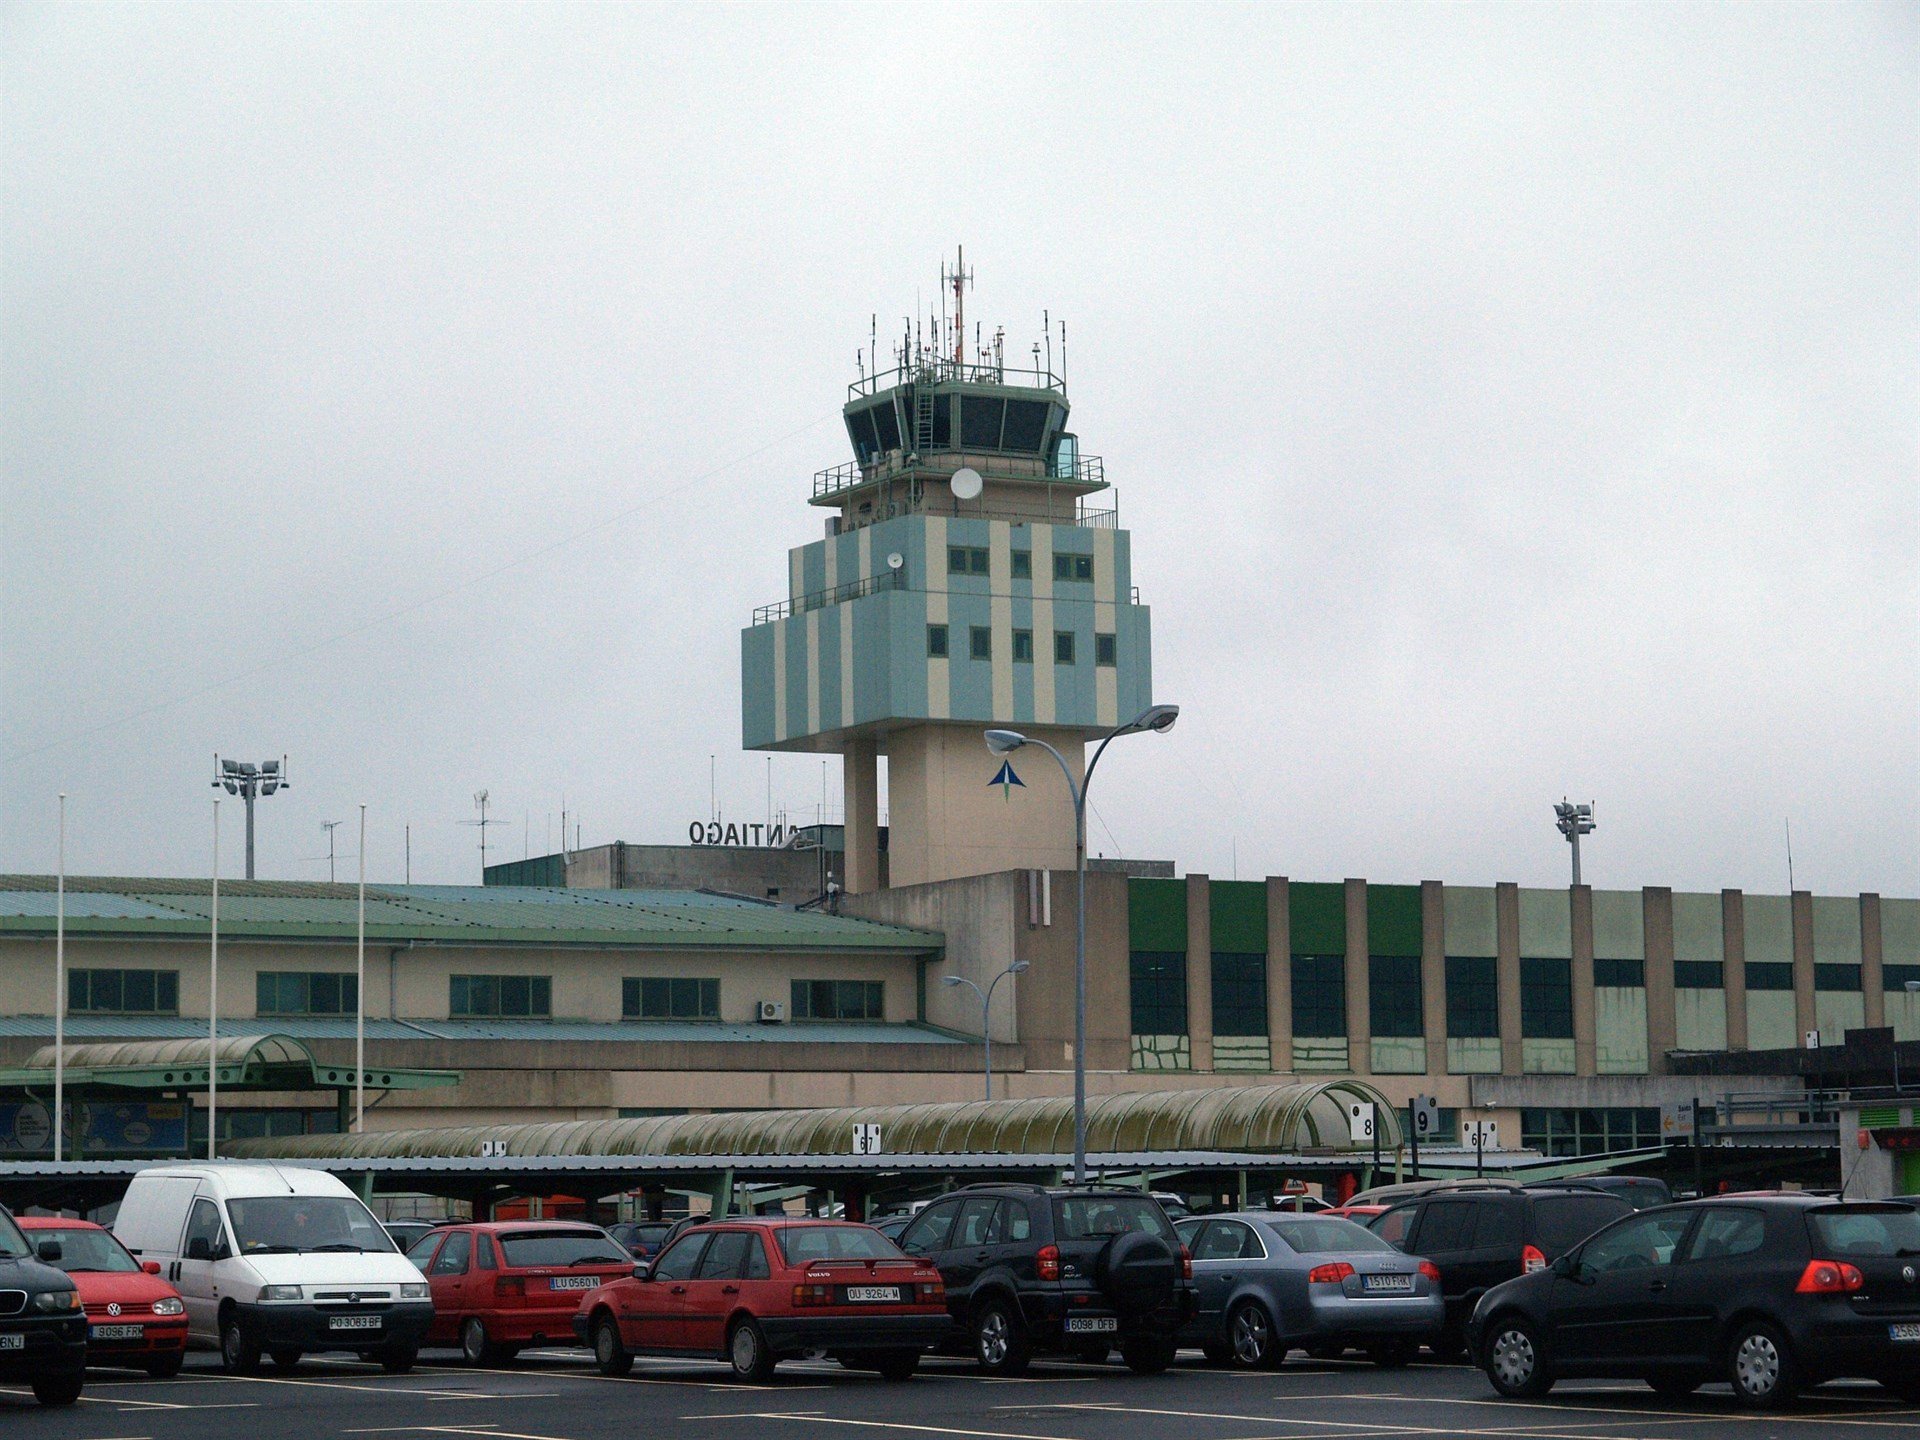 Treballadors d'Eulen a aeroports gallecs també convoquen vaga